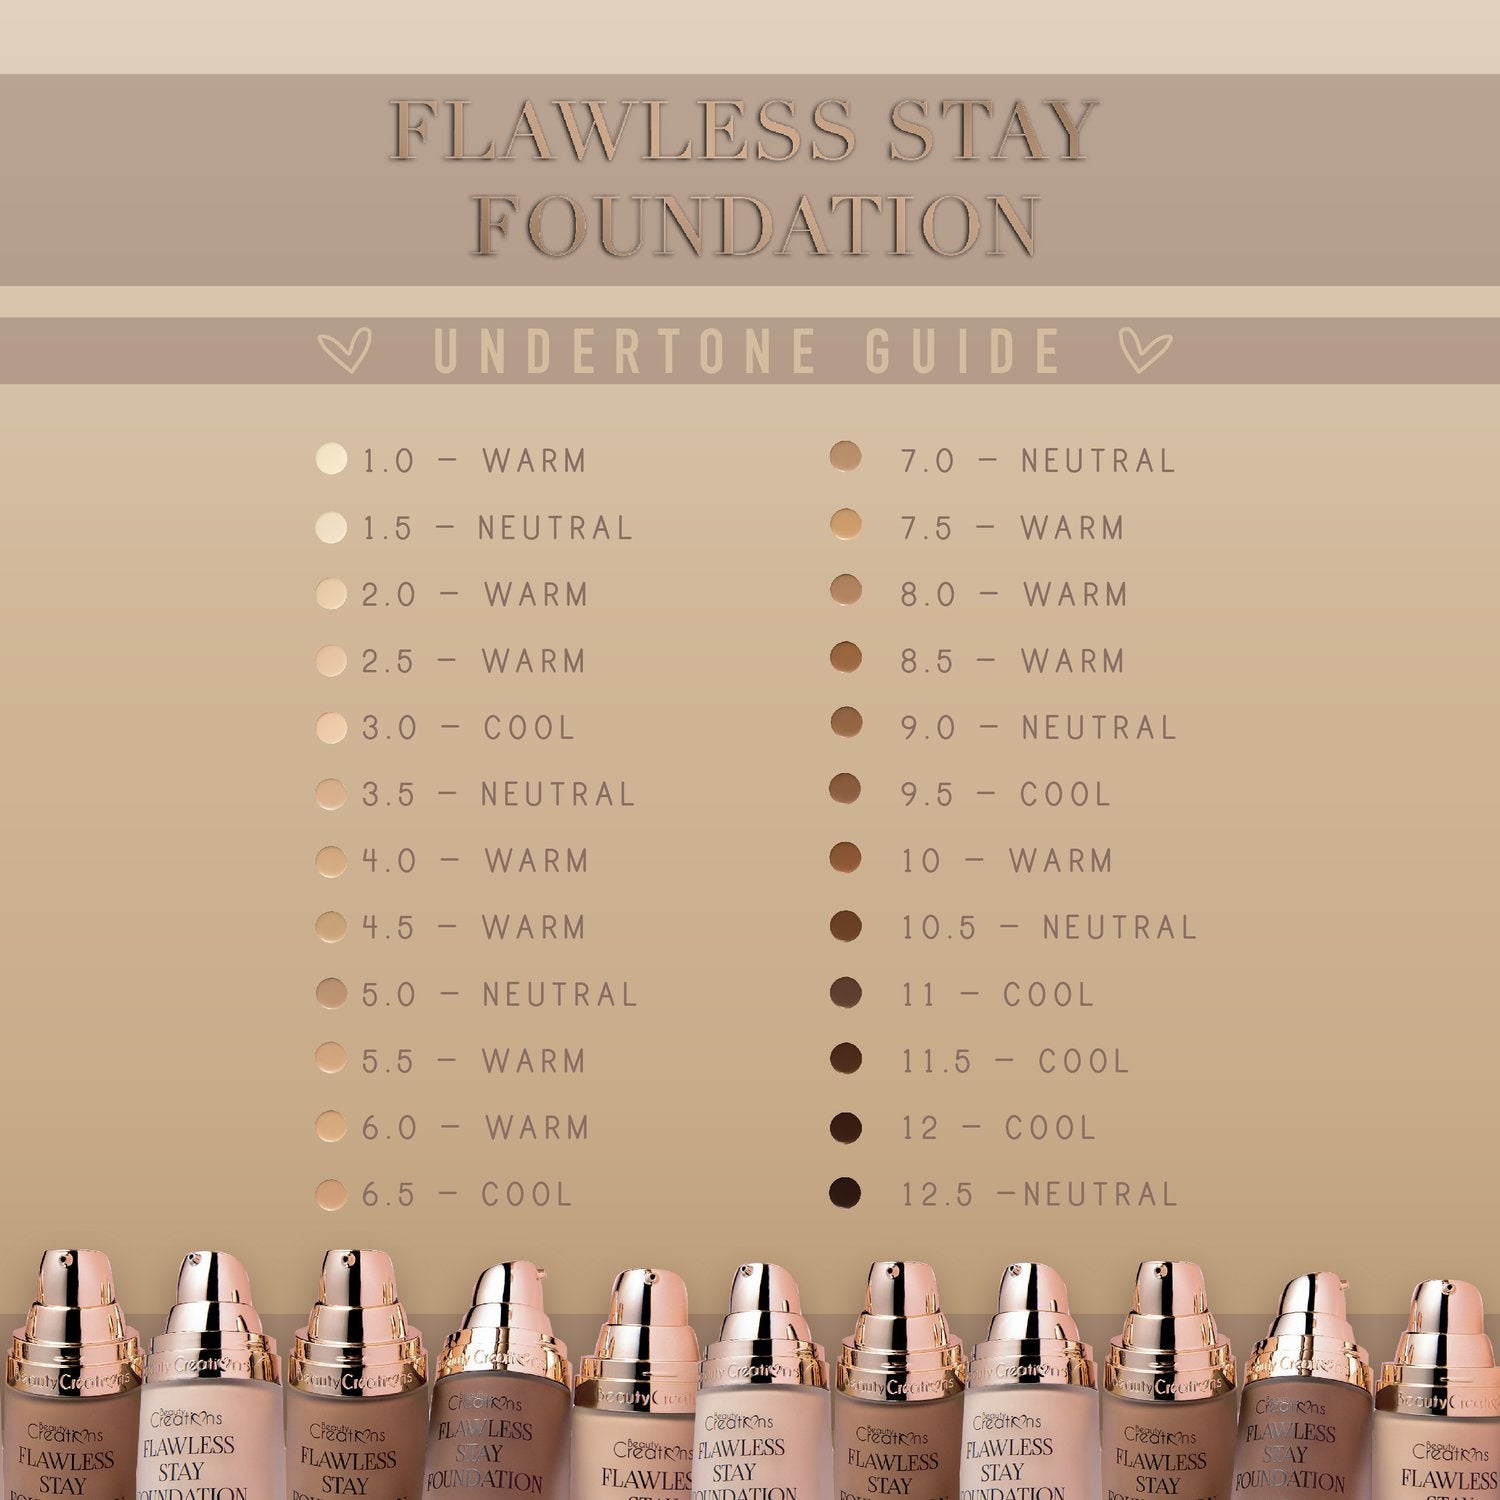 FLAWLESS STAY FOUNDATION FS 2.5